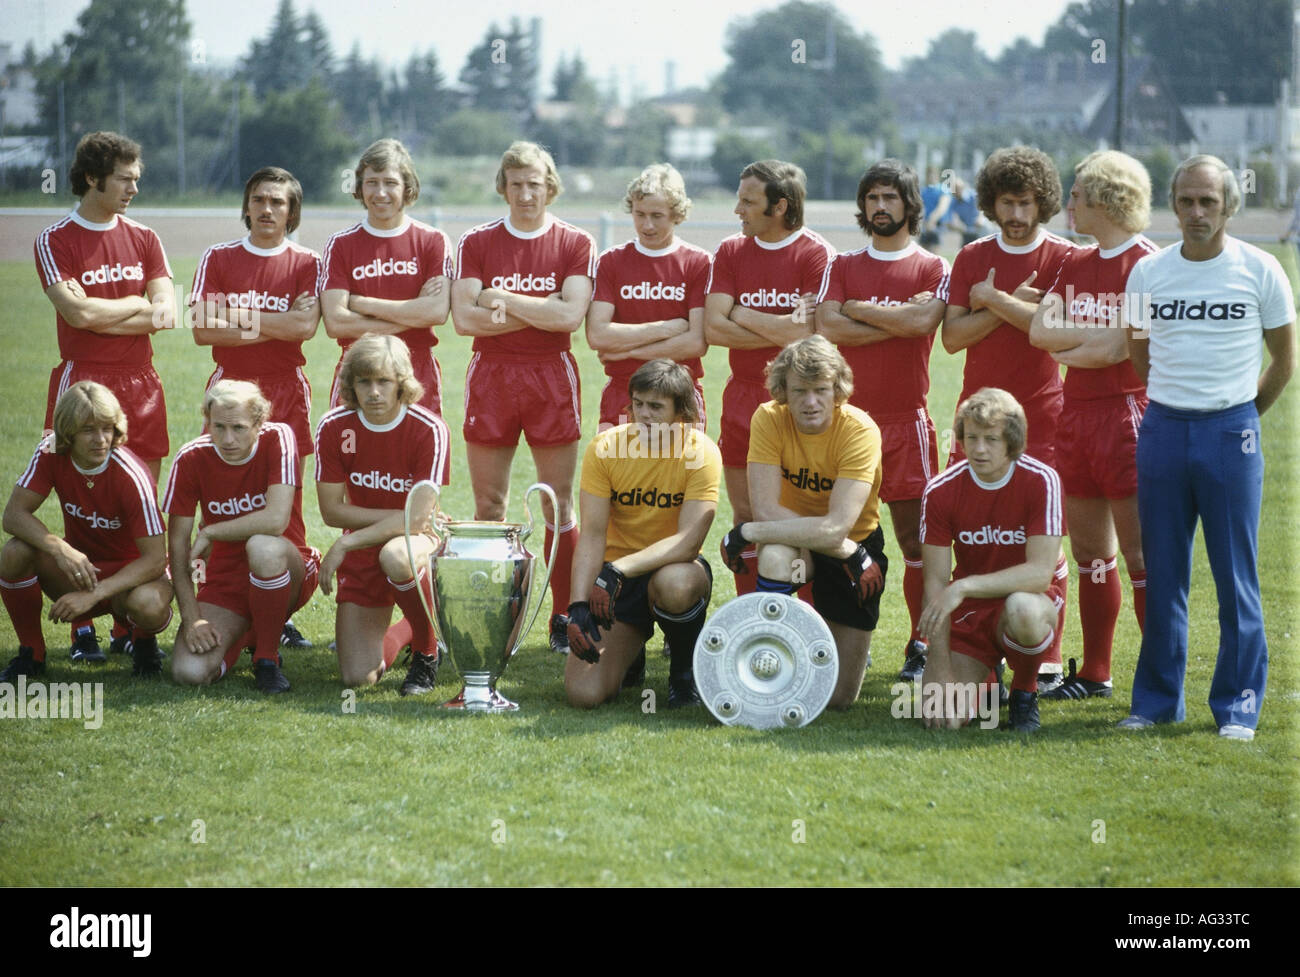 Deporte, Deportes, fútbol / fútbol, FC Bayern Munich, foto de equipo, con trofeos de campeones alemanes y europeos, 1974, Foto de stock